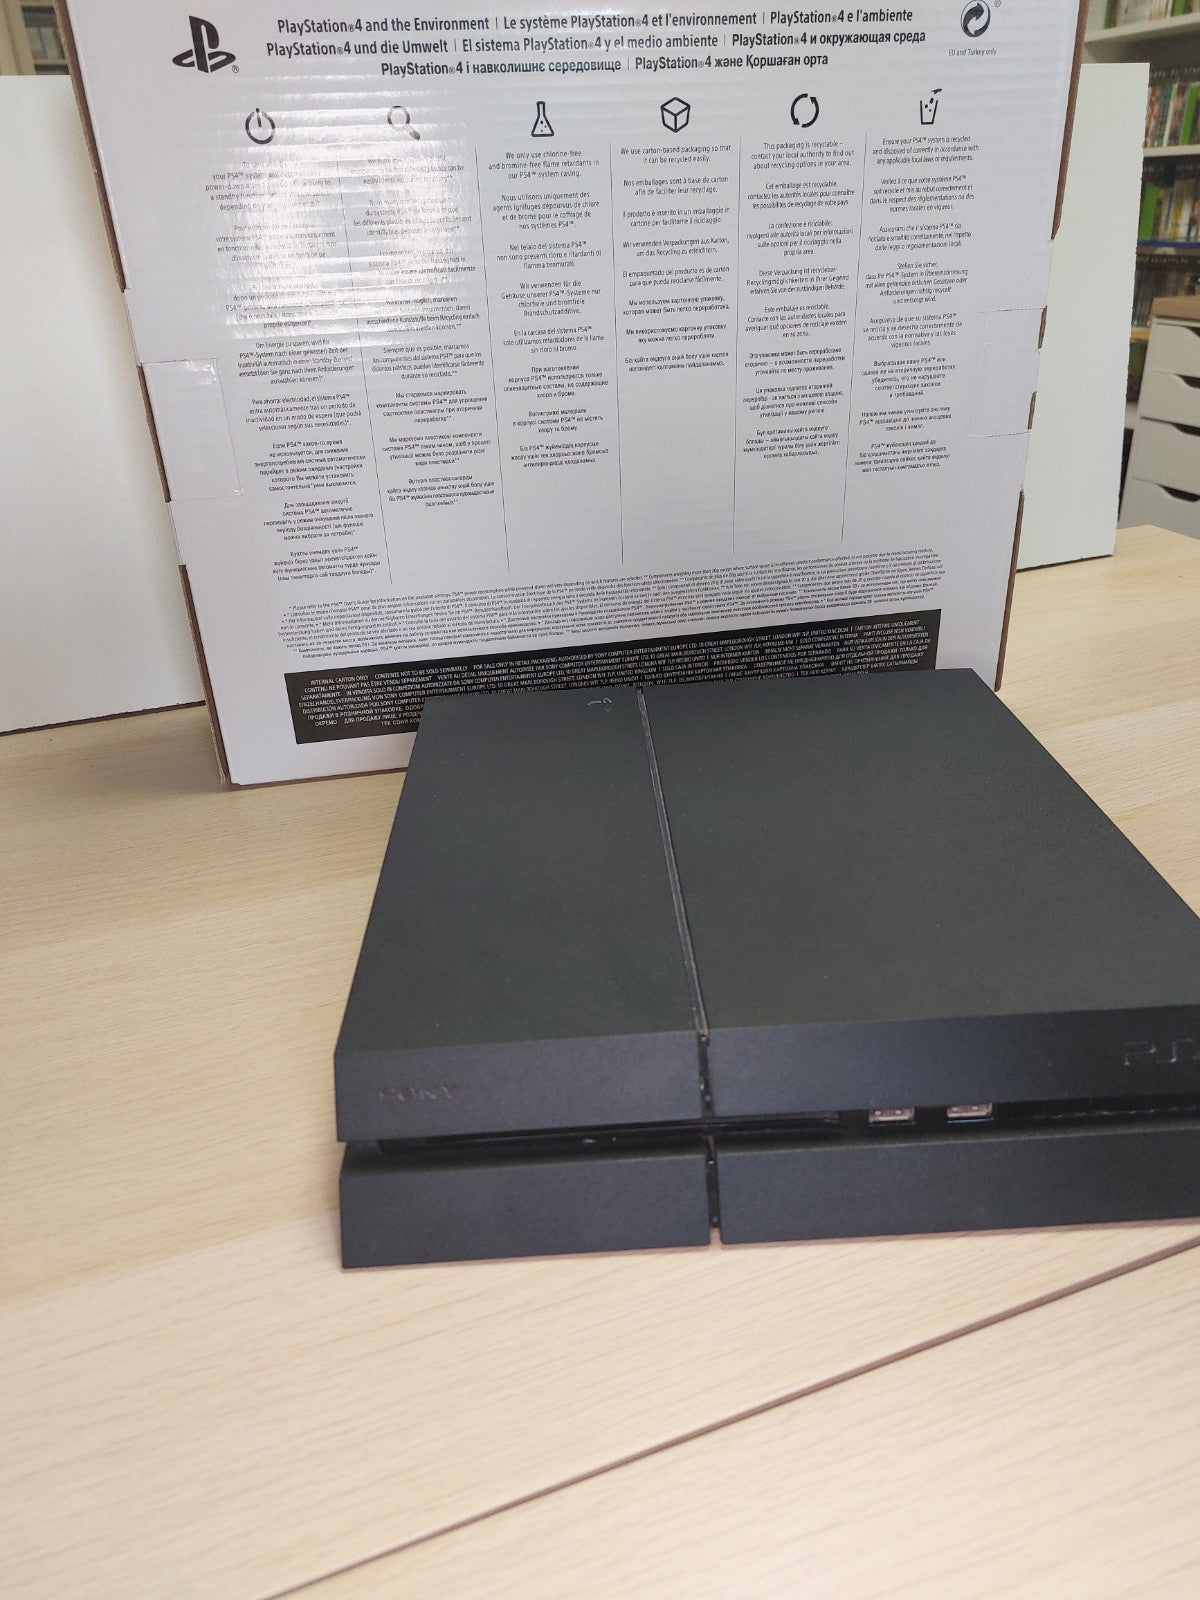 Playstation 4 500 gb in doos inclusief controller en kabels playstation 4